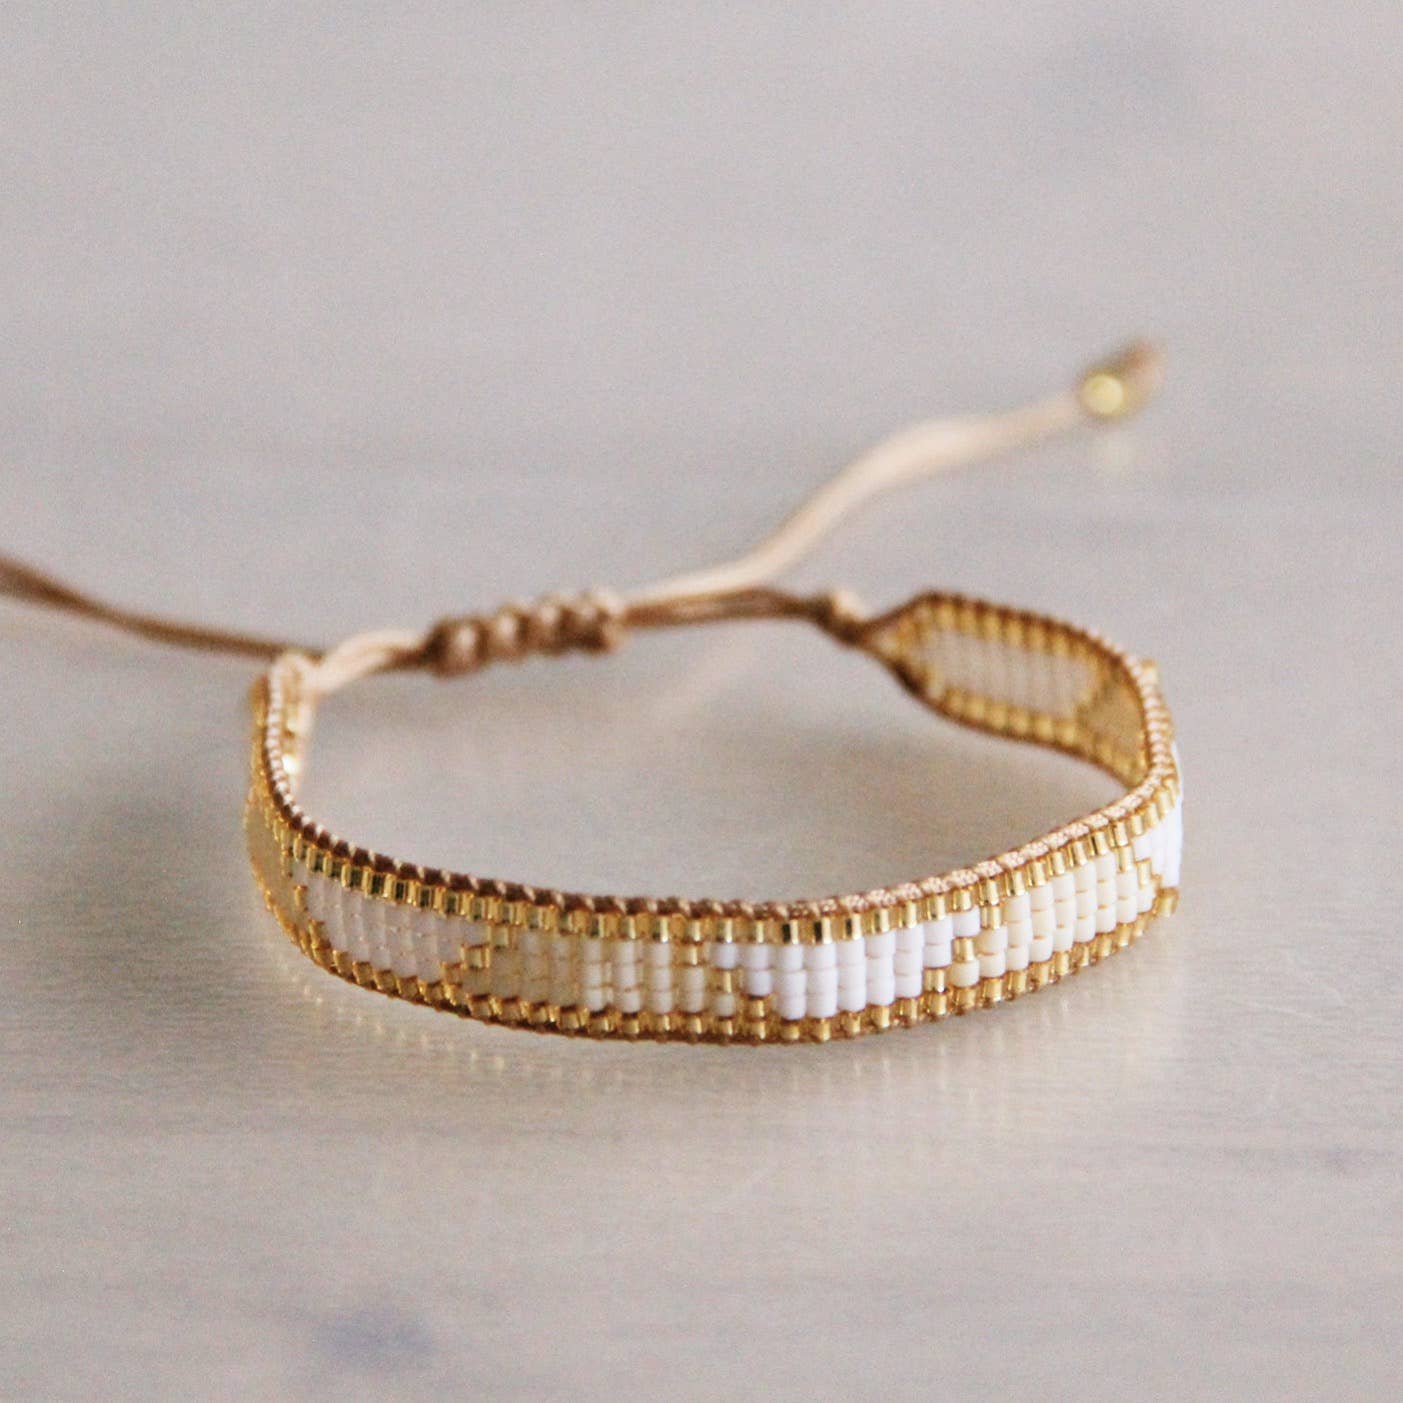 Weaving bracelet white/champagne/gold